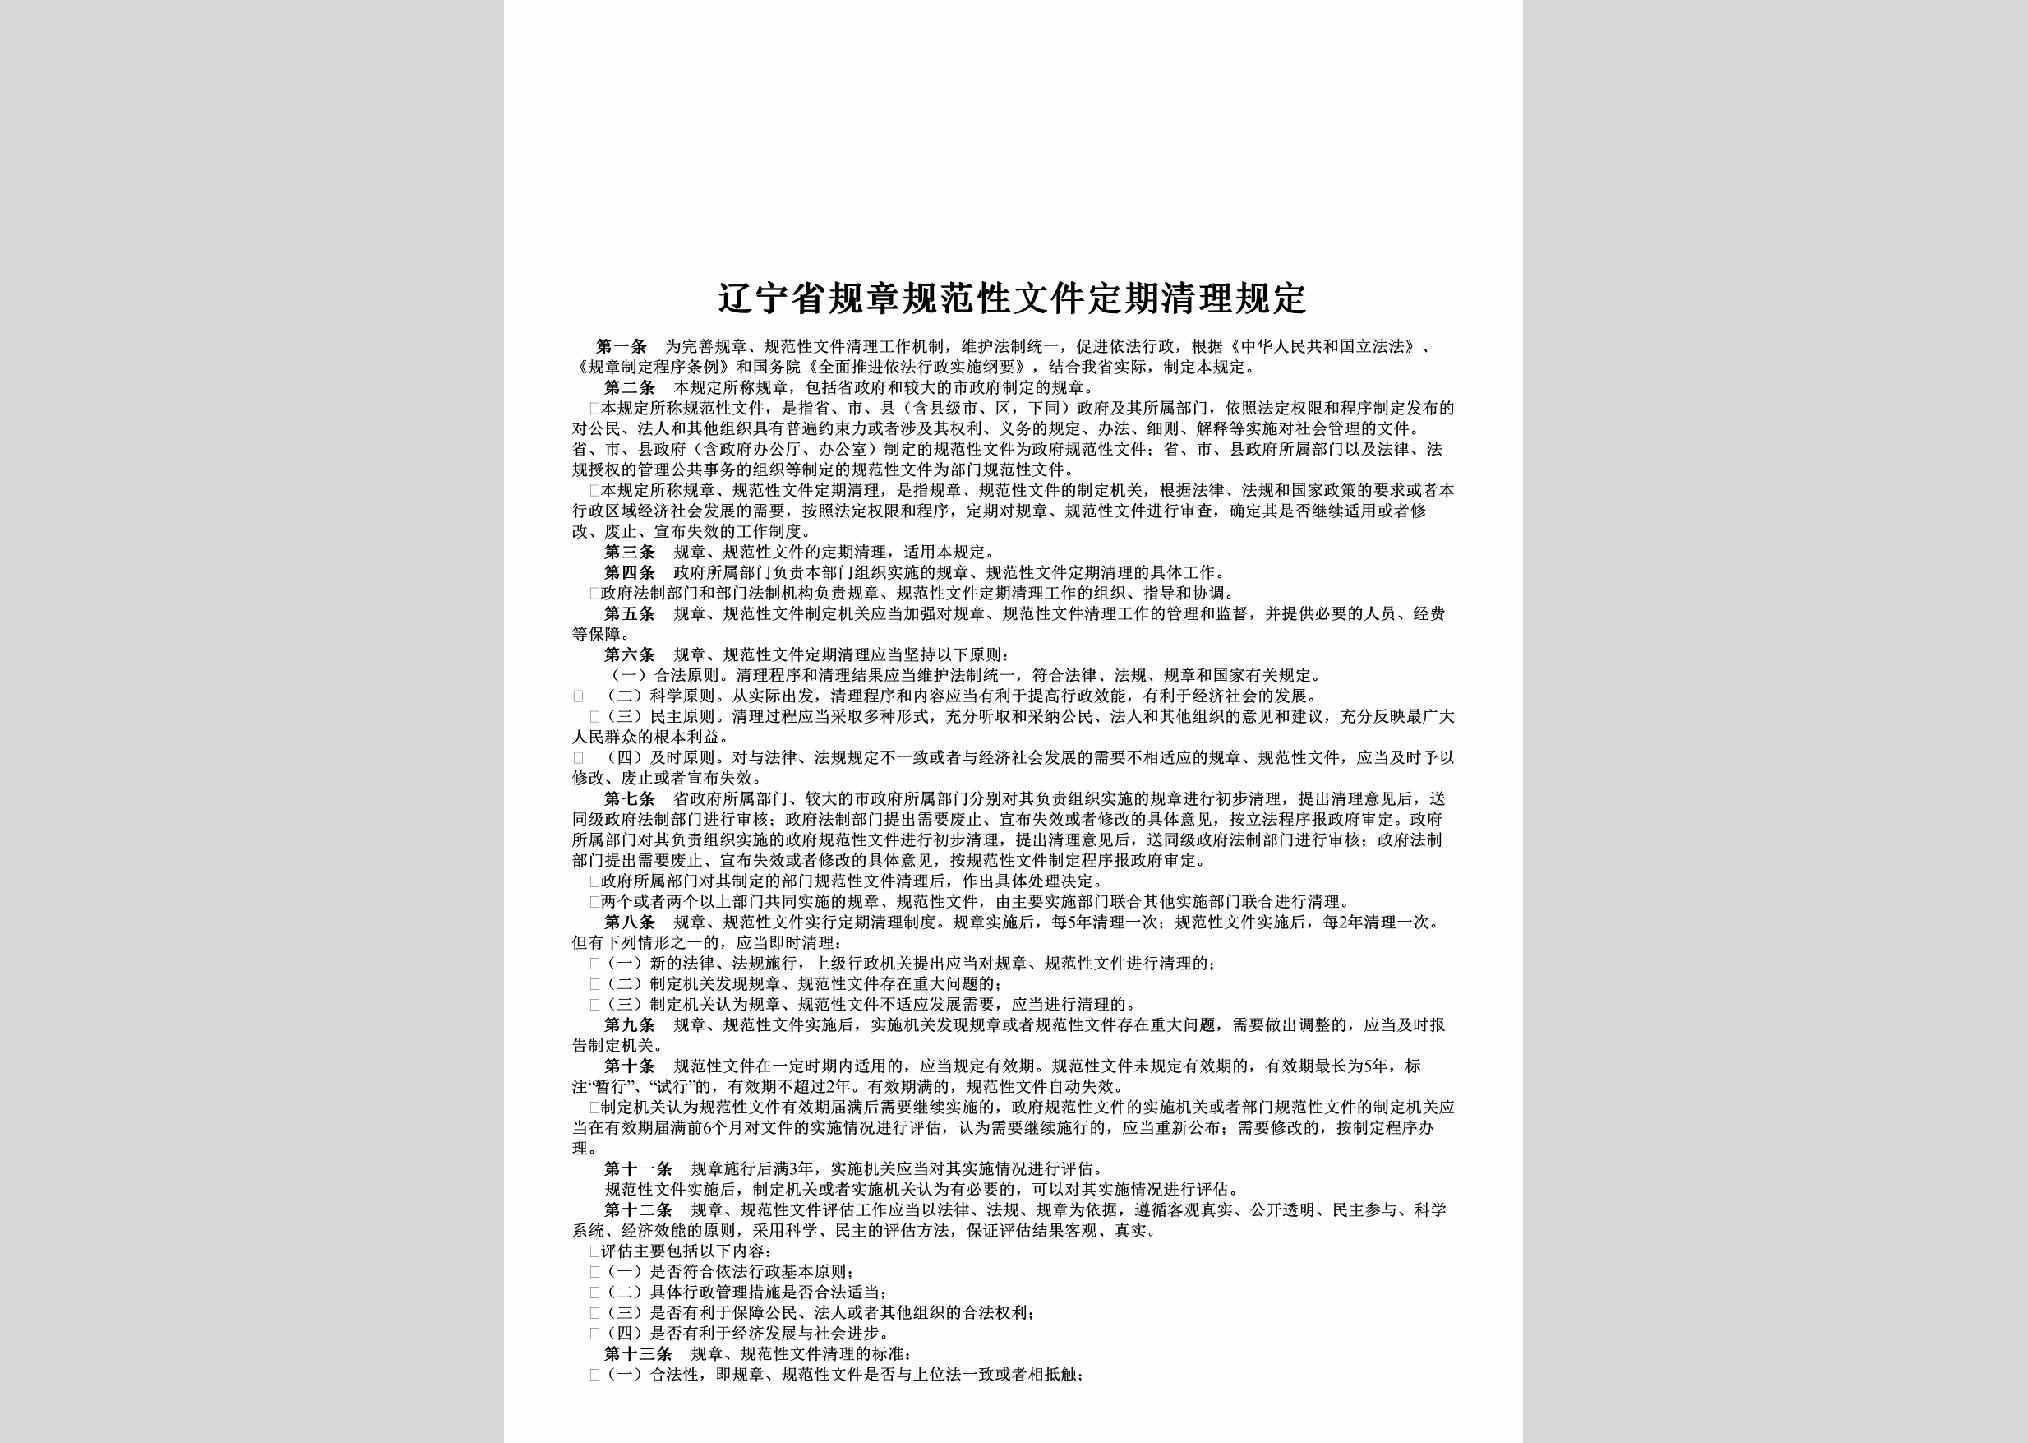 LN-WJDQQLGD-2009：辽宁省规章规范性文件定期清理规定